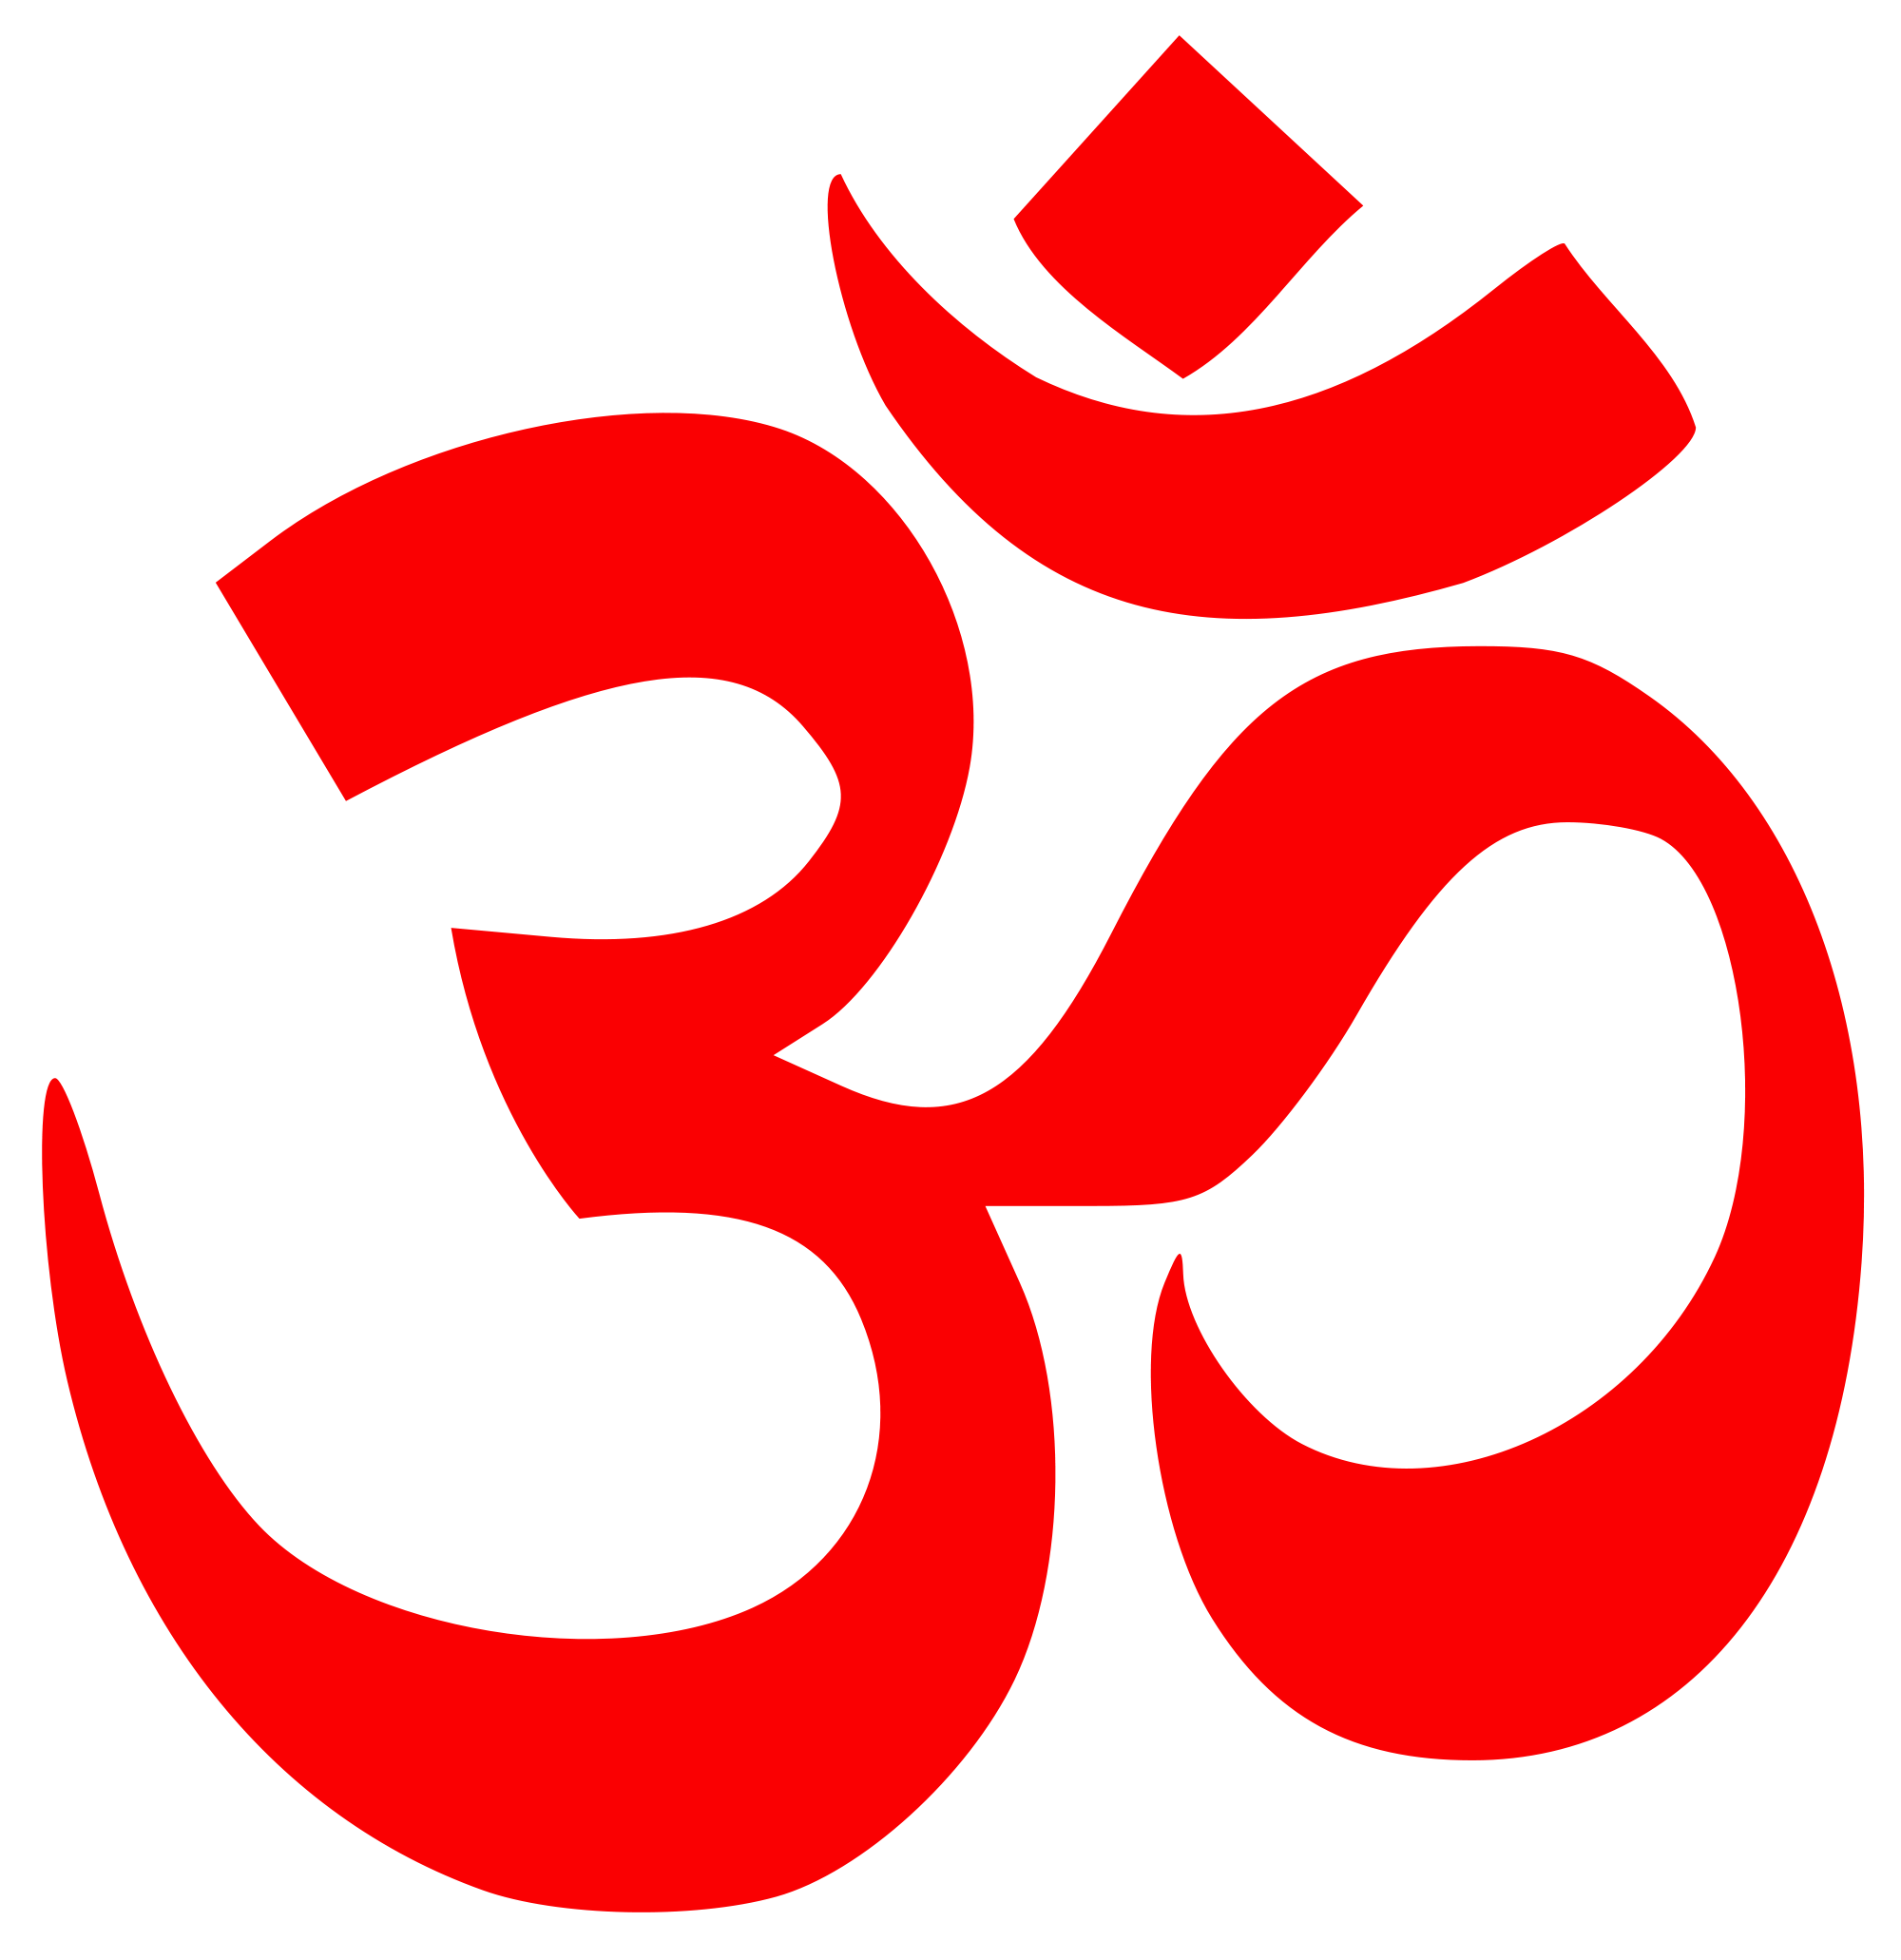 hindu symbols and their names